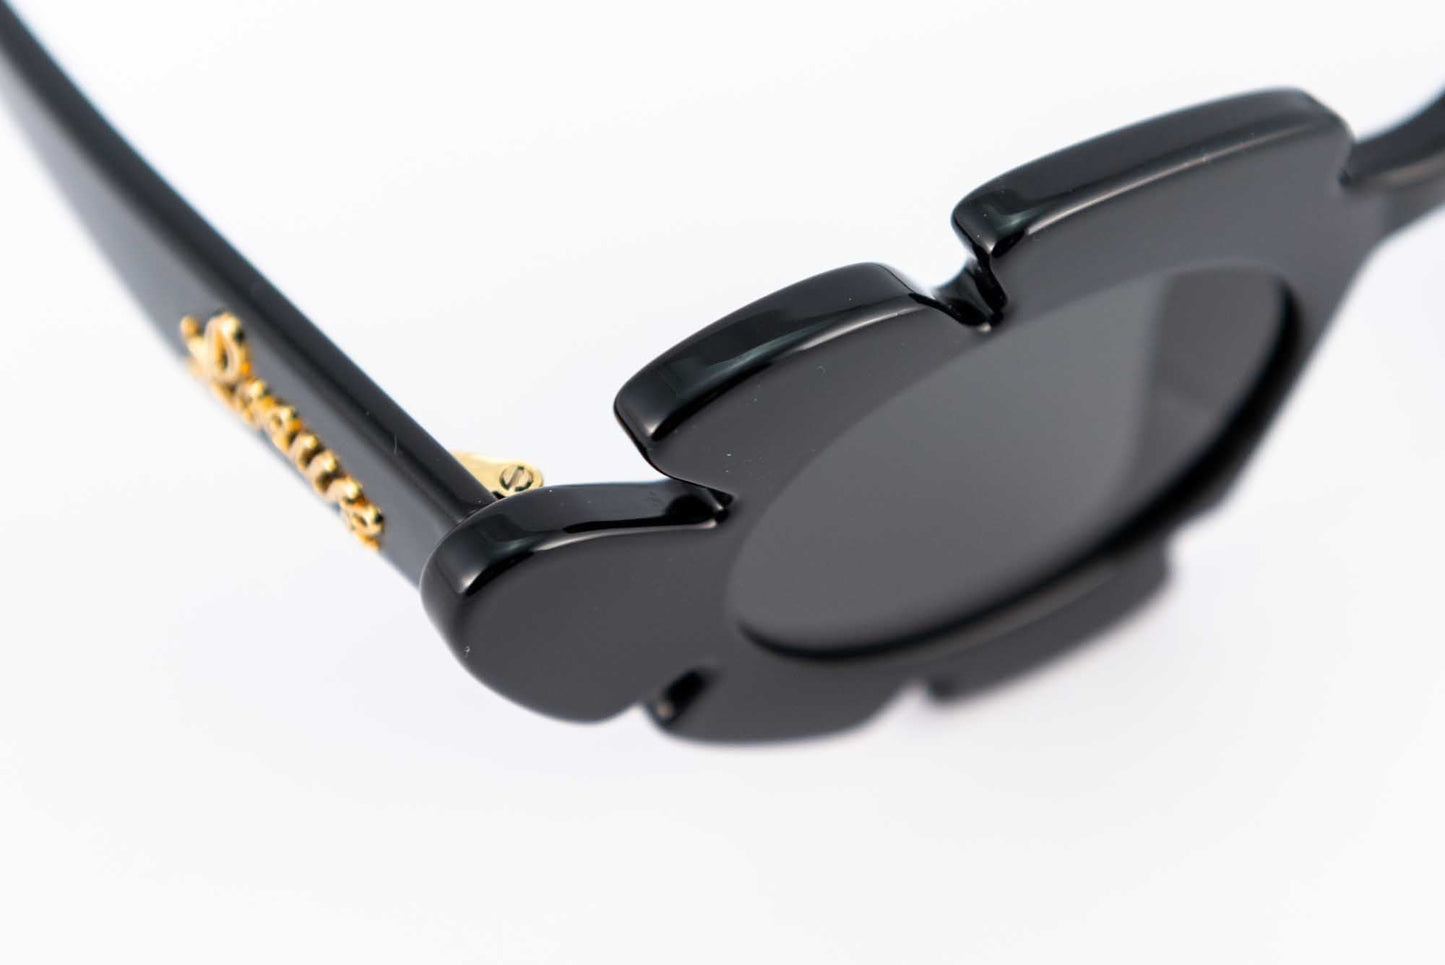 Loewe: Occhiale da sole a fiore in nylon iniettato nero - Spectaclo.com - eyewear store - Occhiali da sole -